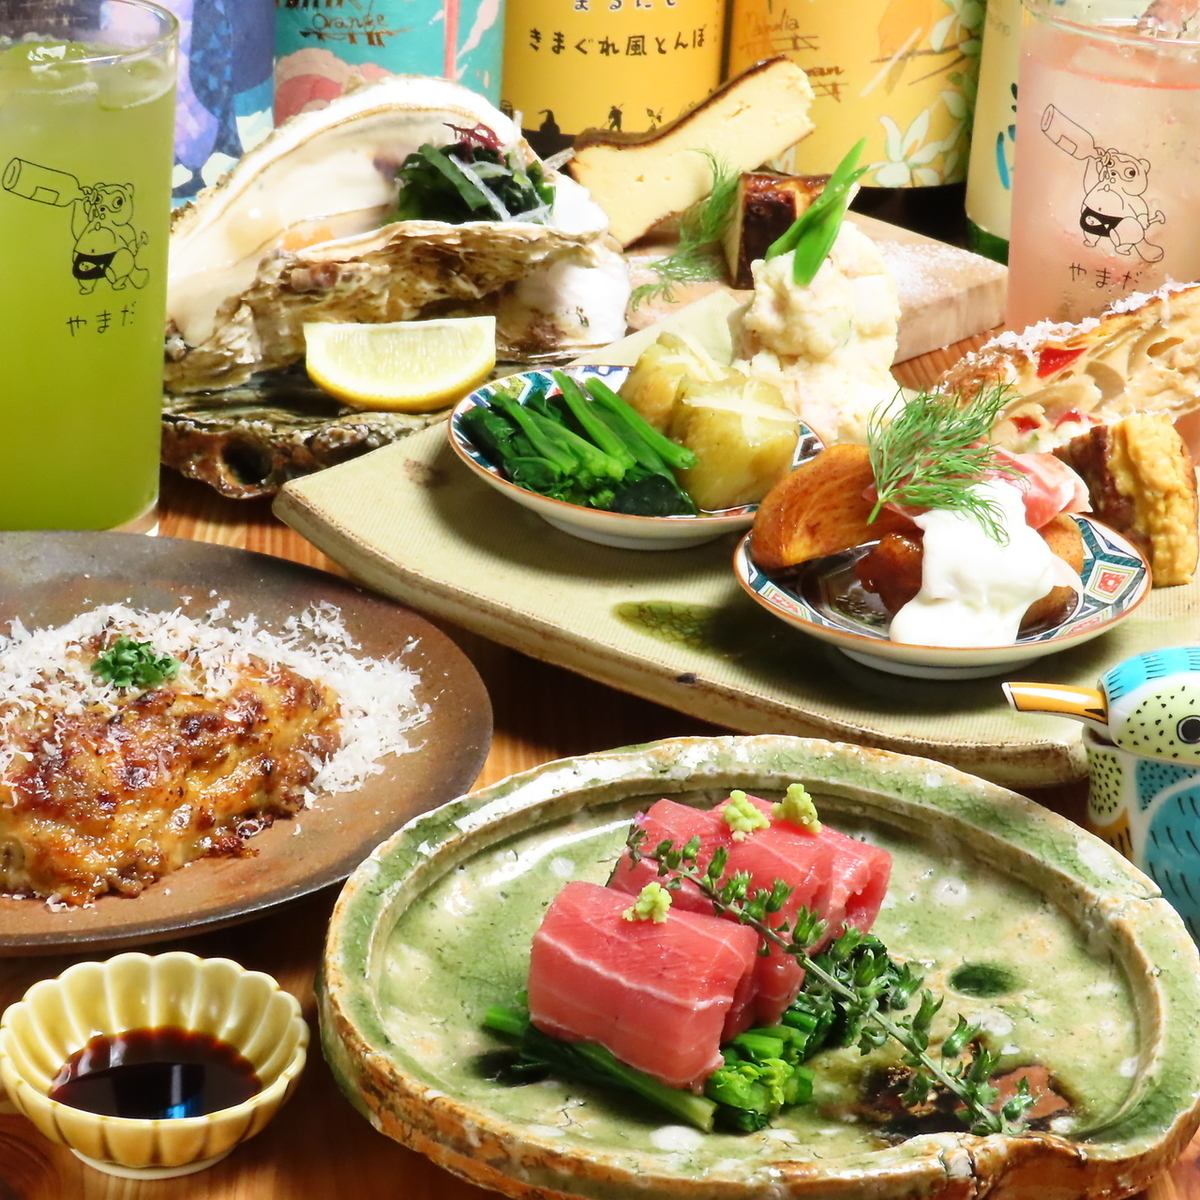 【세이부 이케부쿠로선·에코다역에서 도보 2분!】 본격적인 일본과 서양 창작 요리를 즐길 수 있습니다